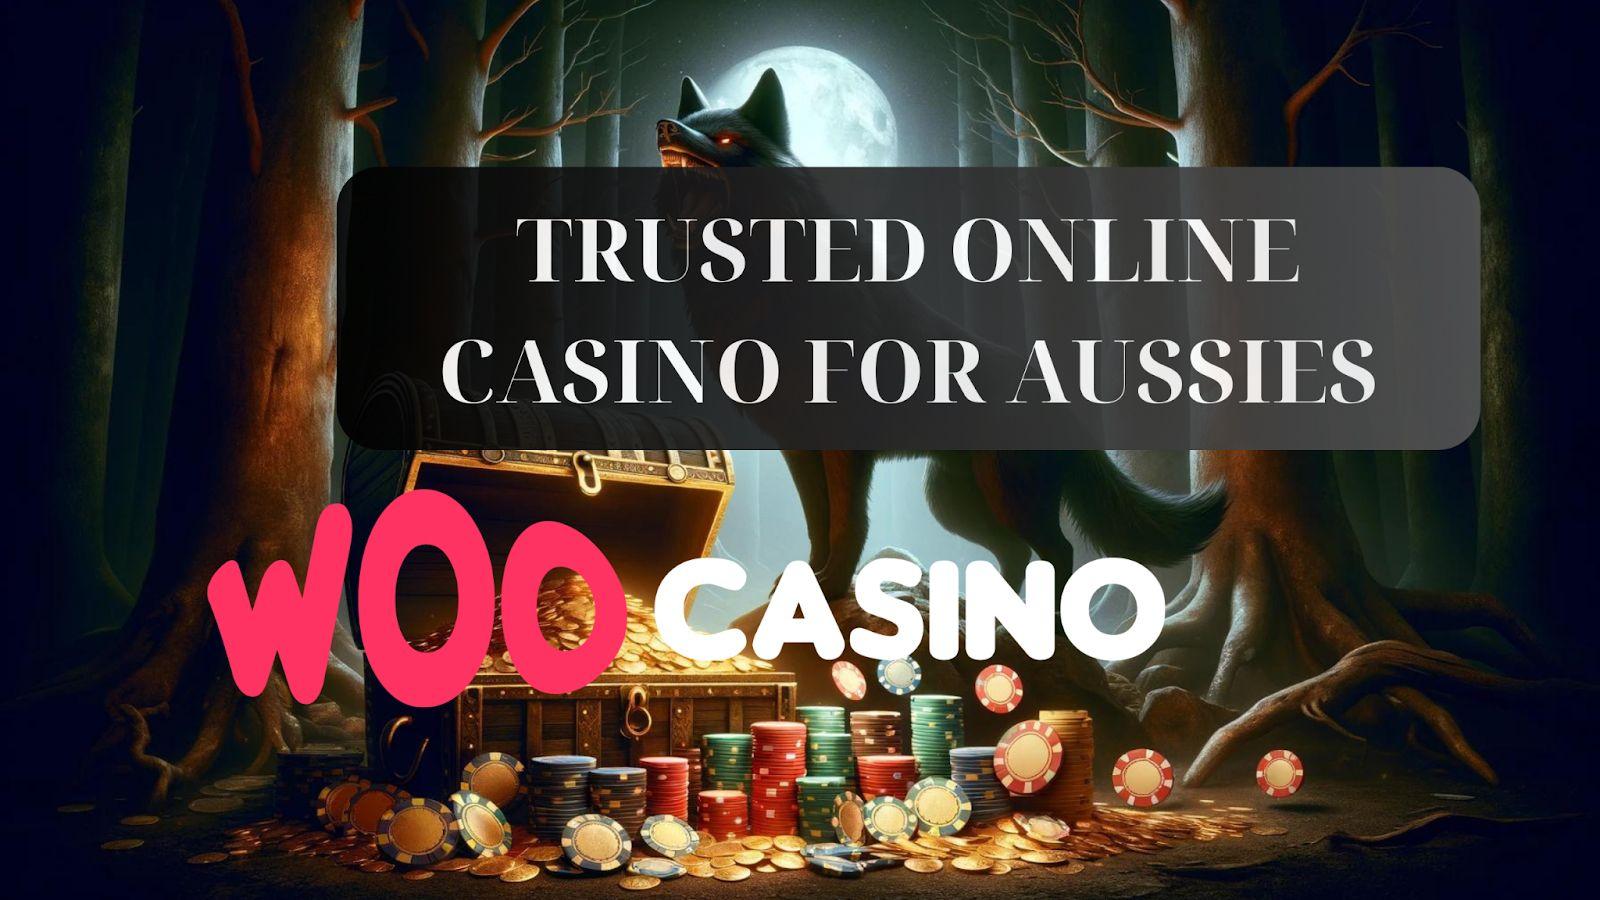 Woo Casino - Die vertrauenswürdige Wahl für Australier